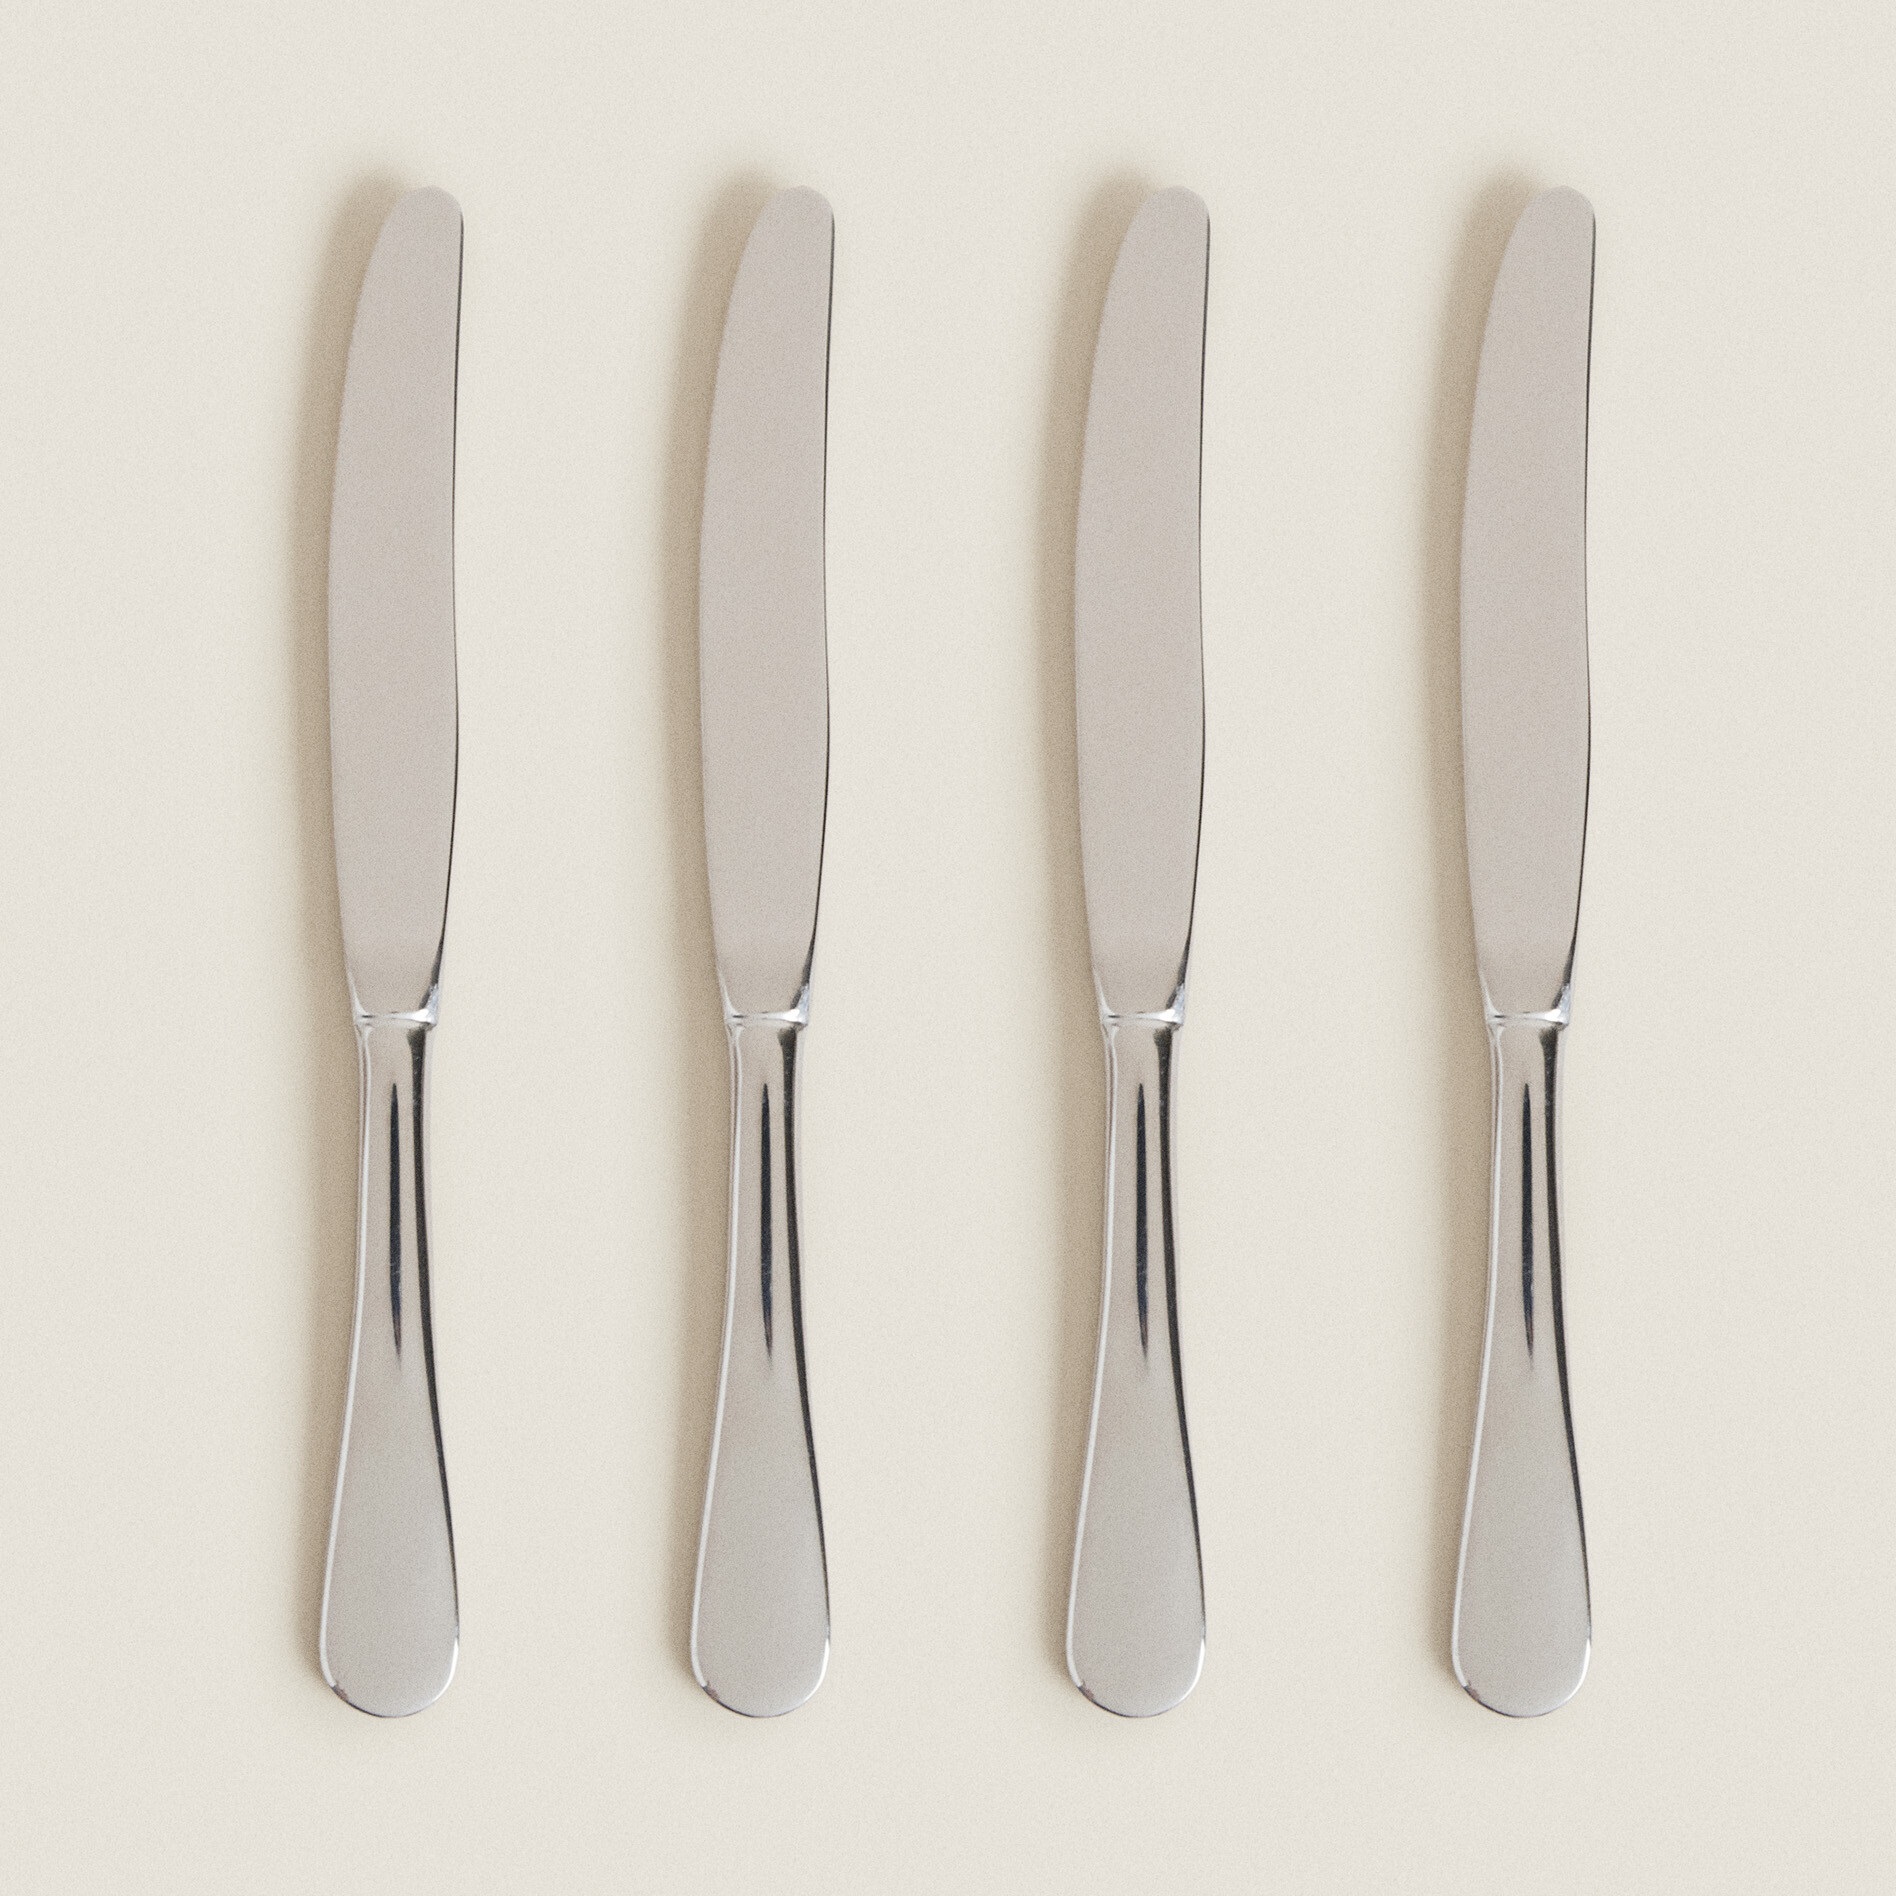 Набор ножей Zara Home 4-piece Classic Knife, 4 шт, серебристый набор столовых ножей patricia мирор